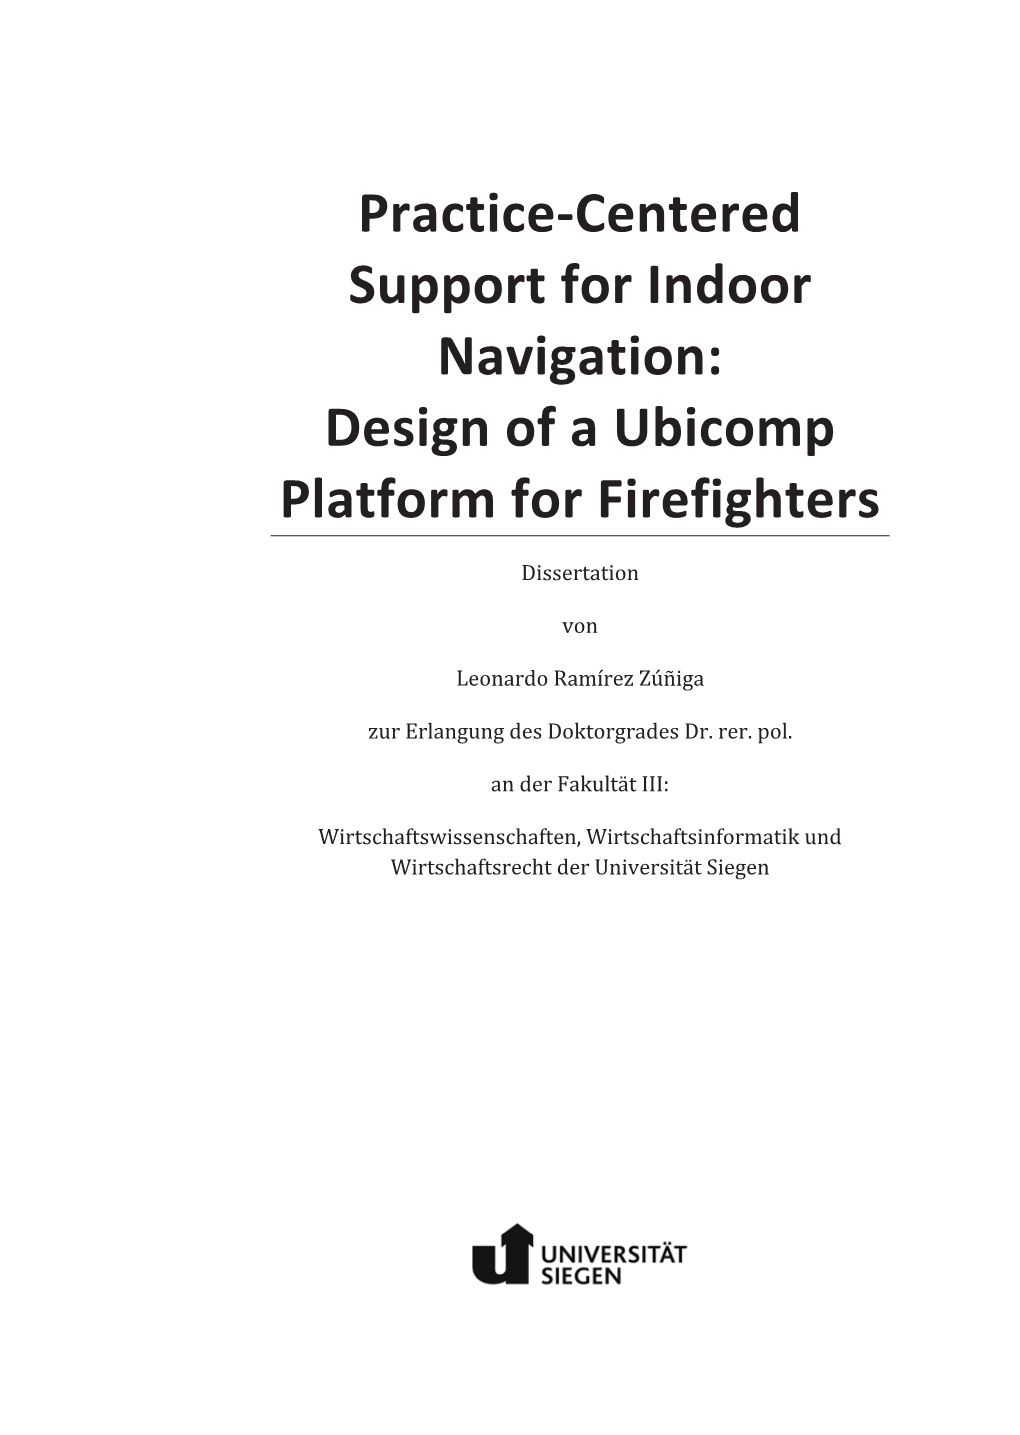 Design of a Ubicomp Platform for Firefighters